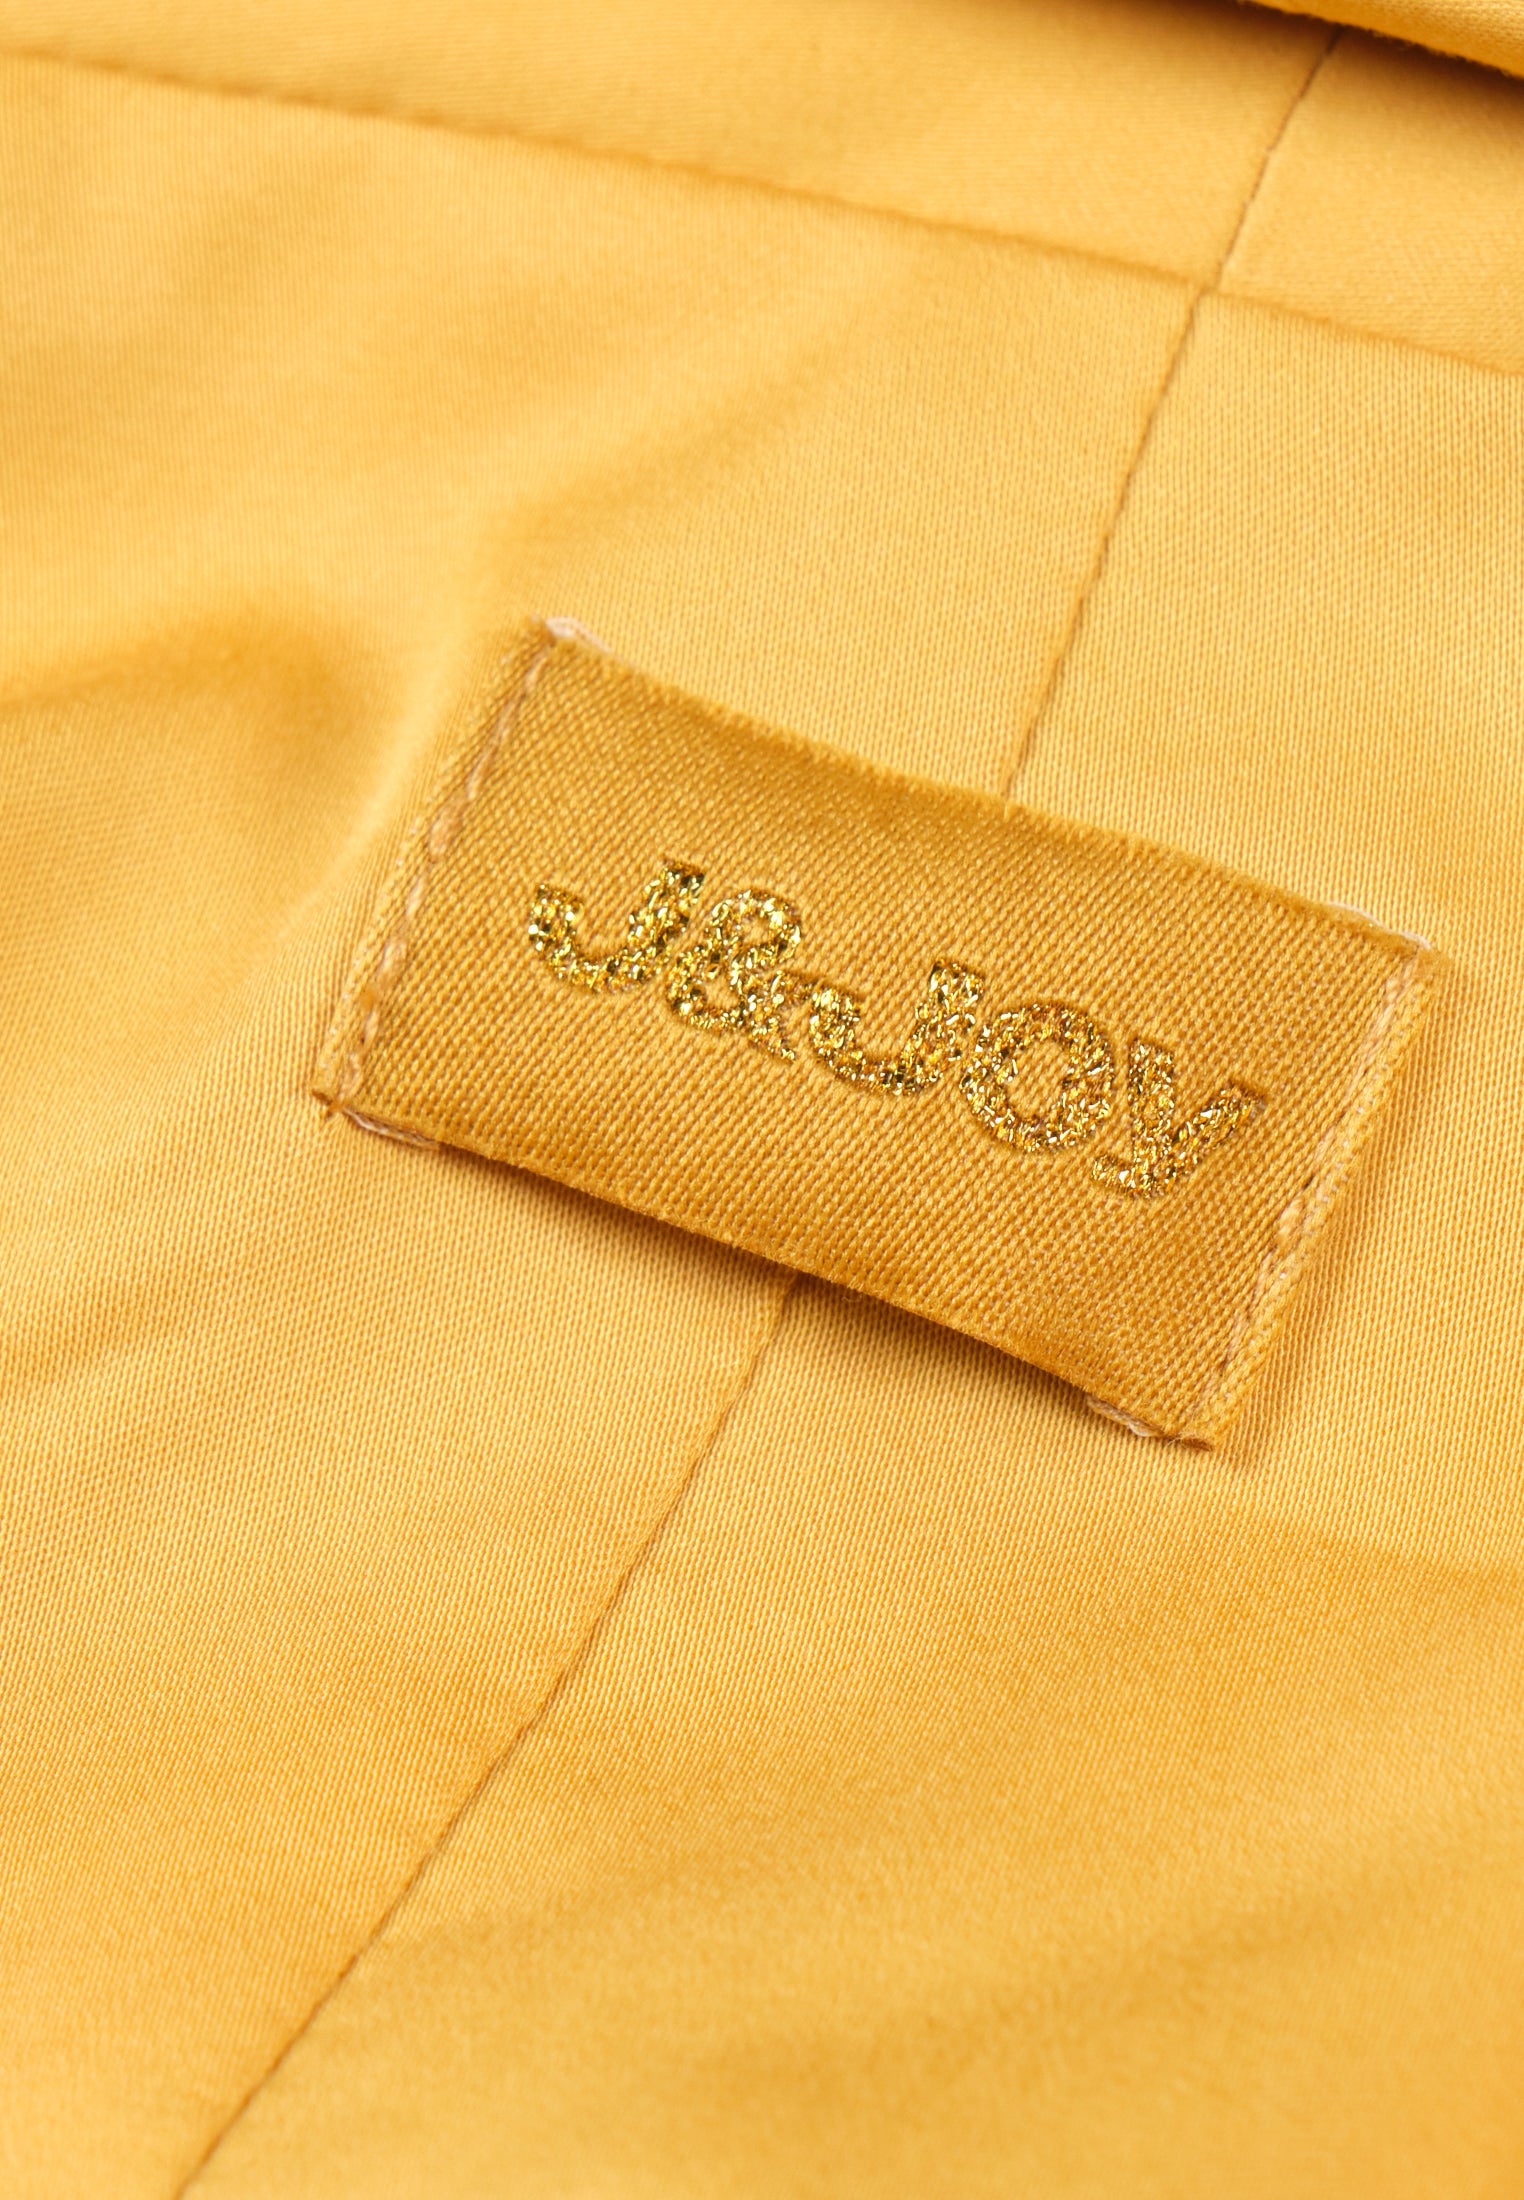 Sweatshirt Femme 04 Feira Golden Oak Blazer | J&JOY.